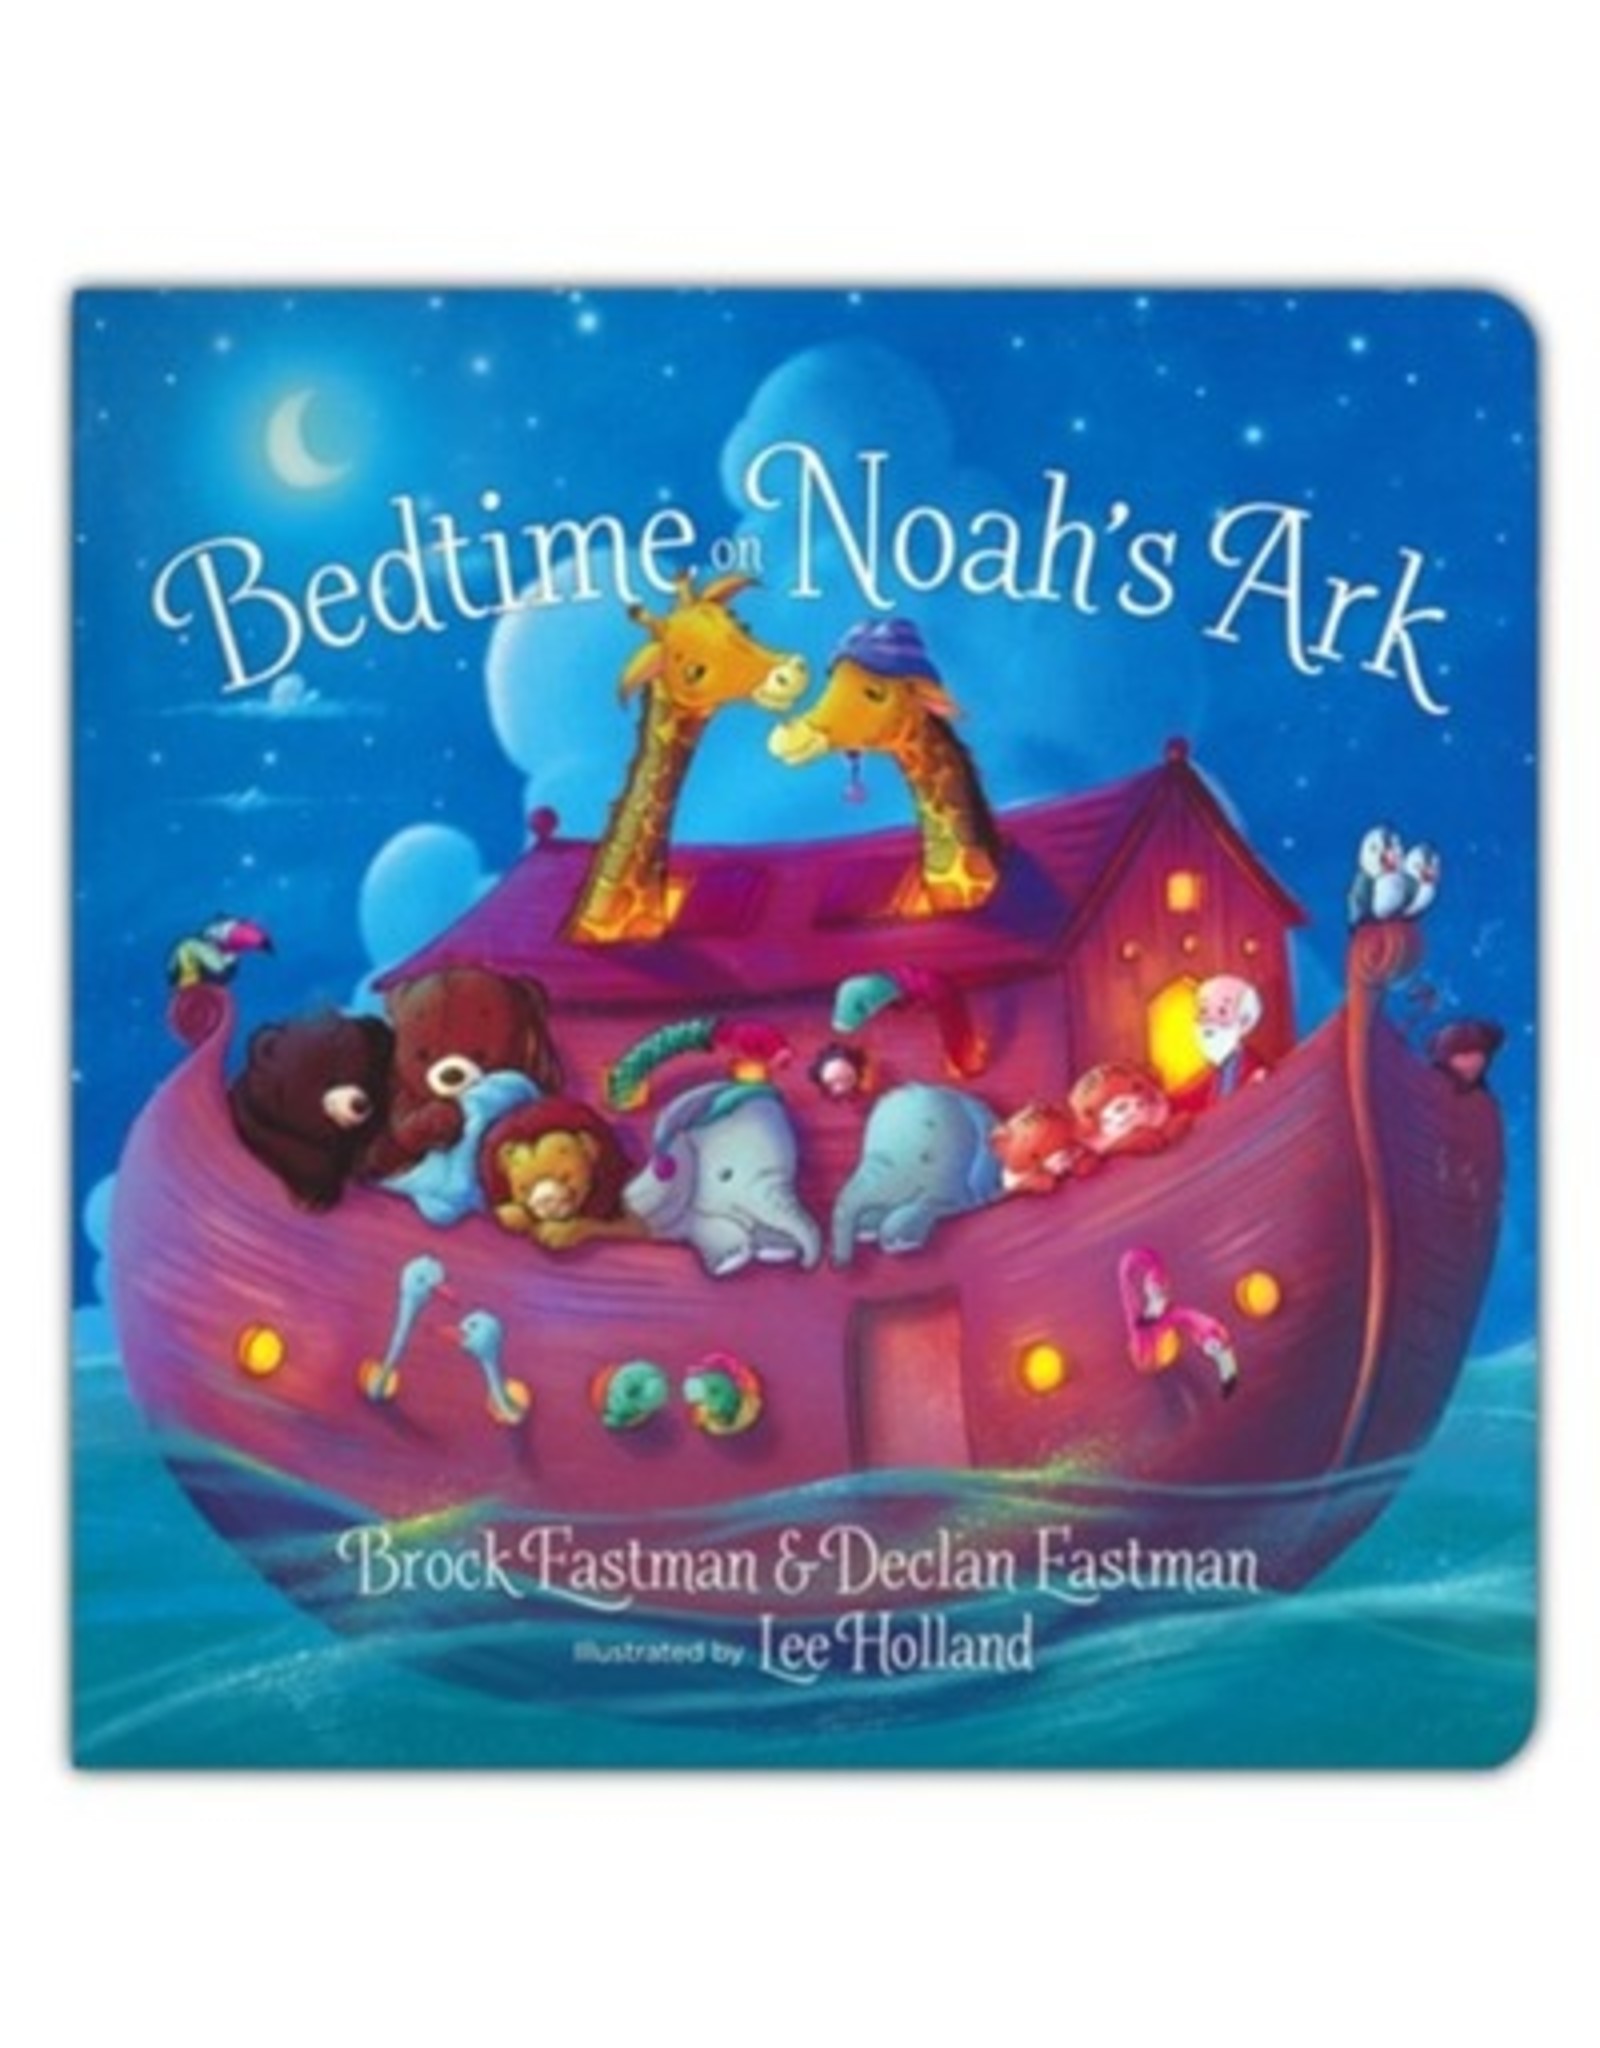 Bedtime Noah's Ark